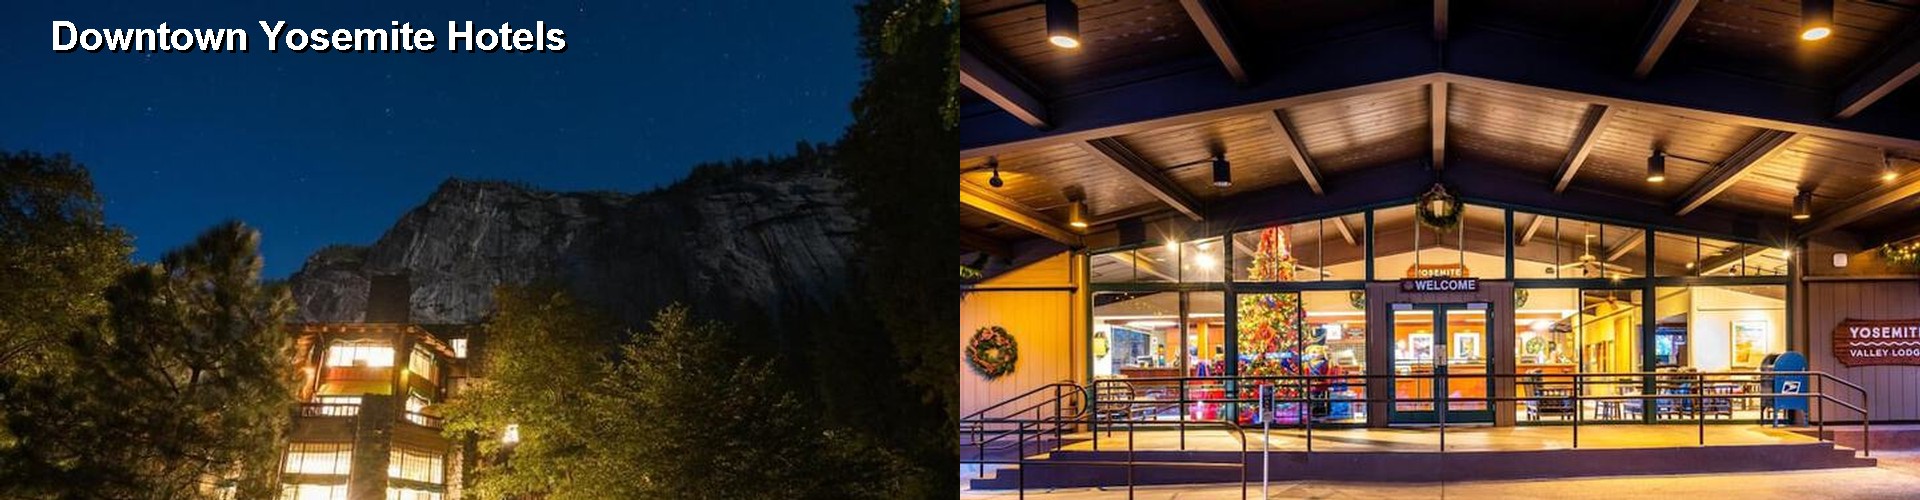 5 Best Hotels near Downtown Yosemite